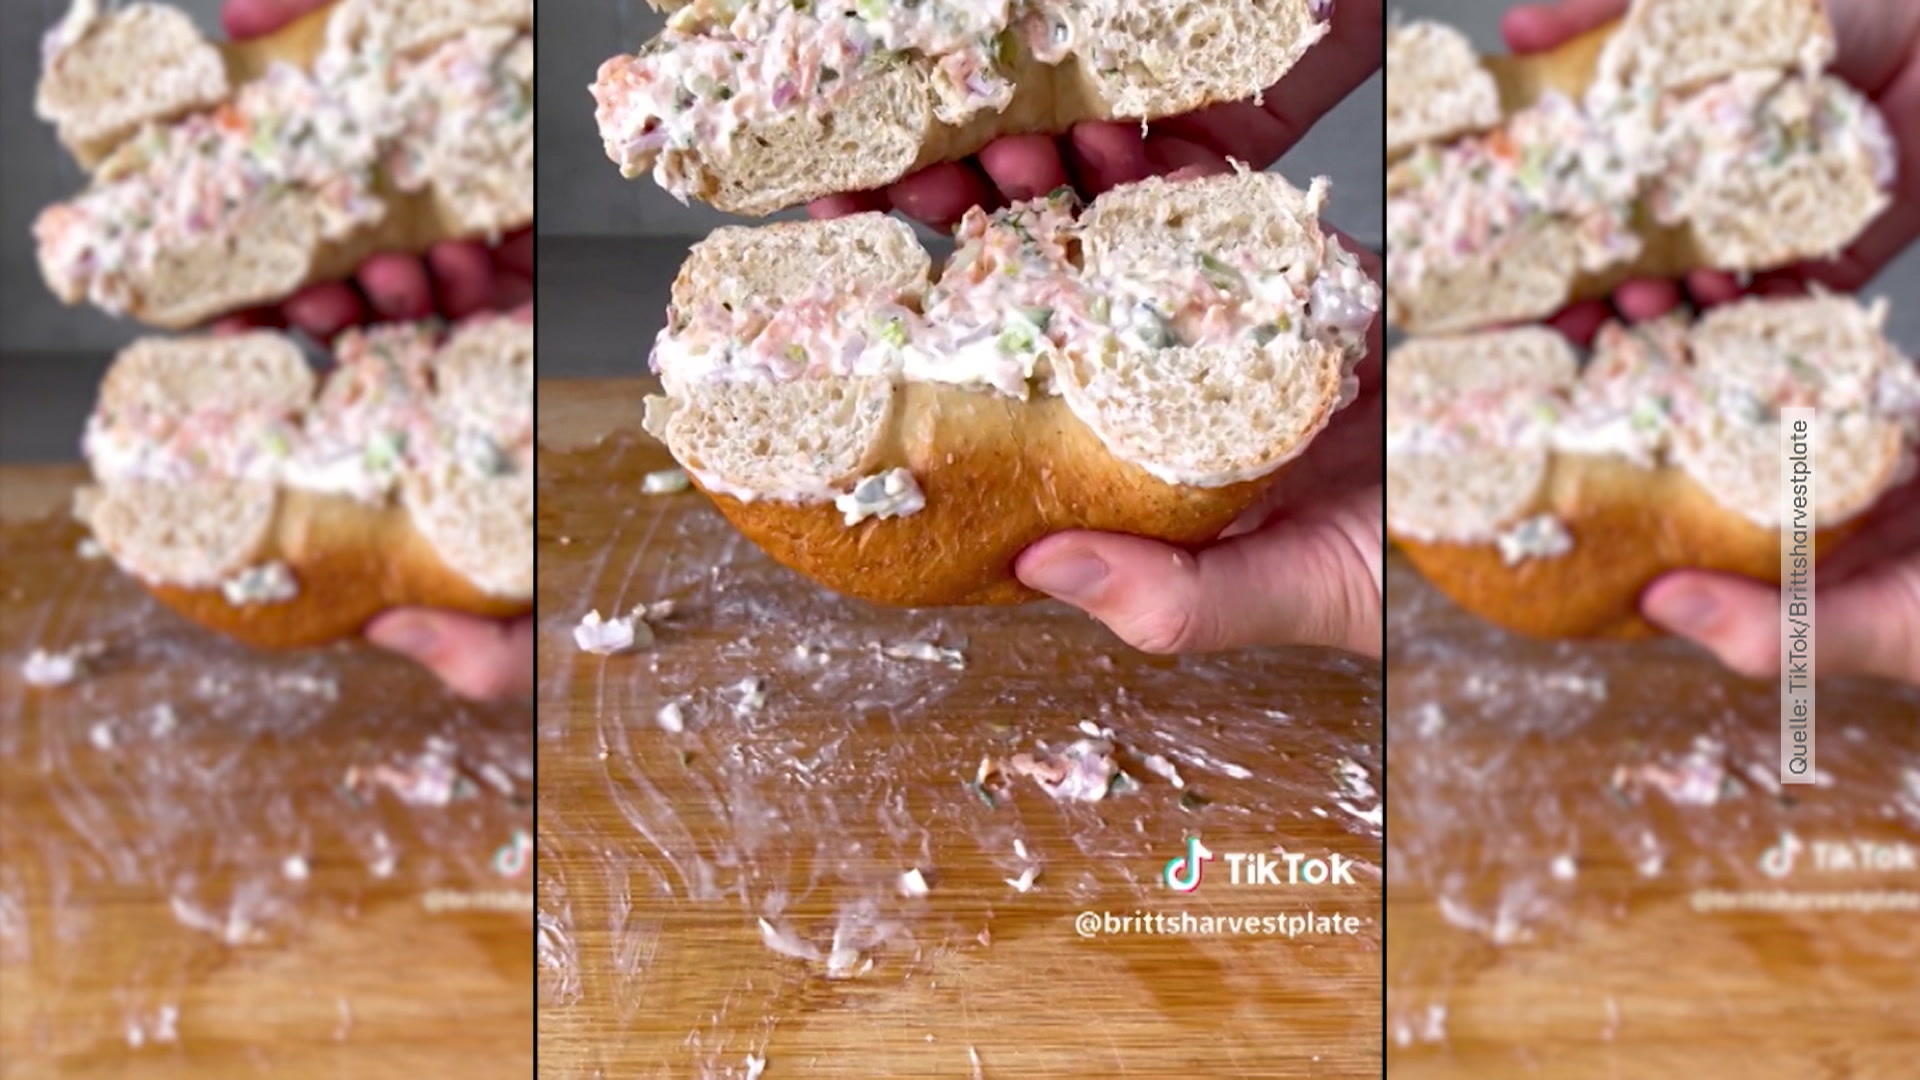 È semplicissimo preparare un panino con baguette tagliata in stile TikTok